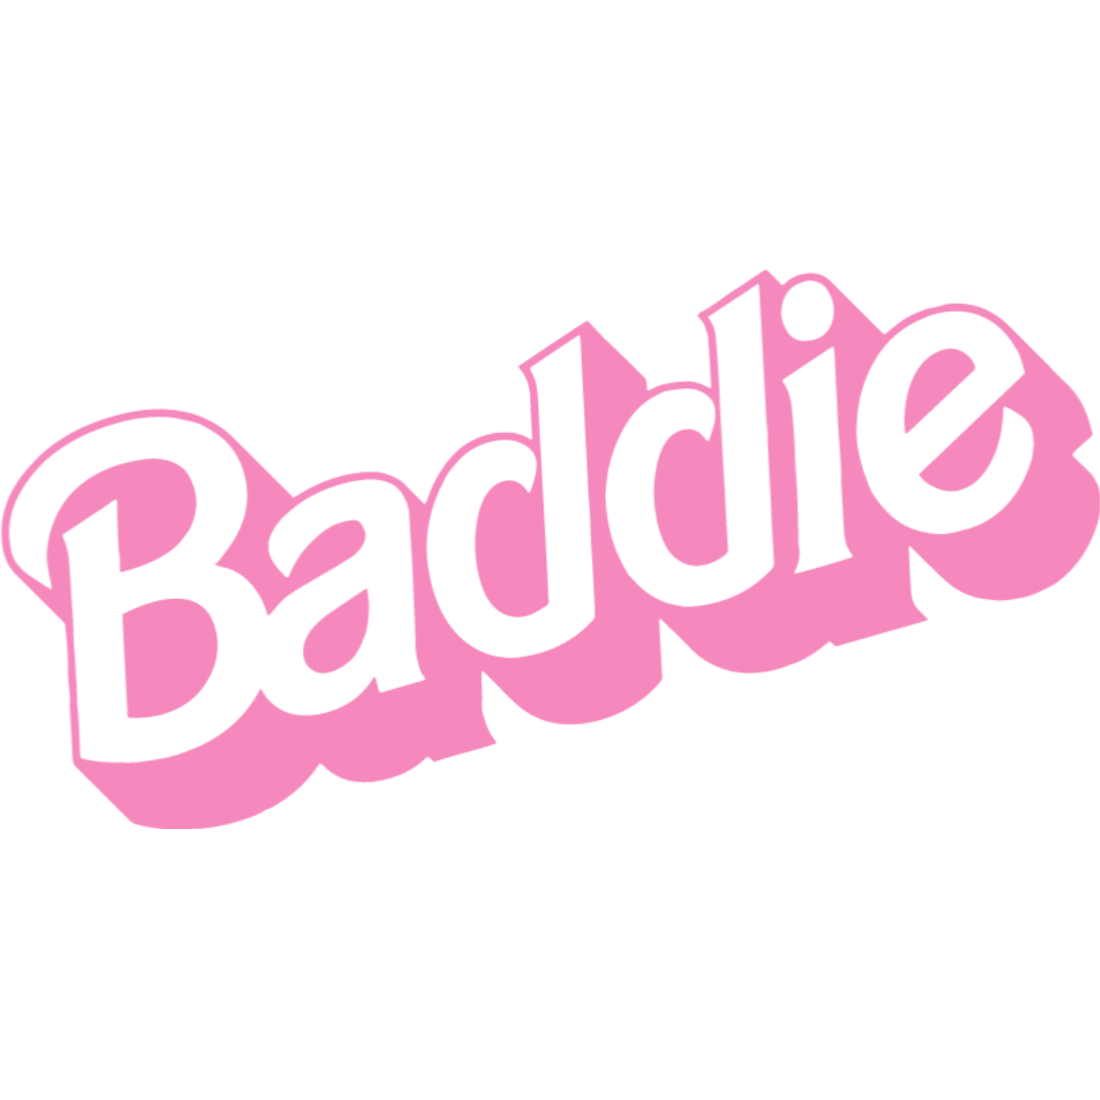 Baddie (Barbie)